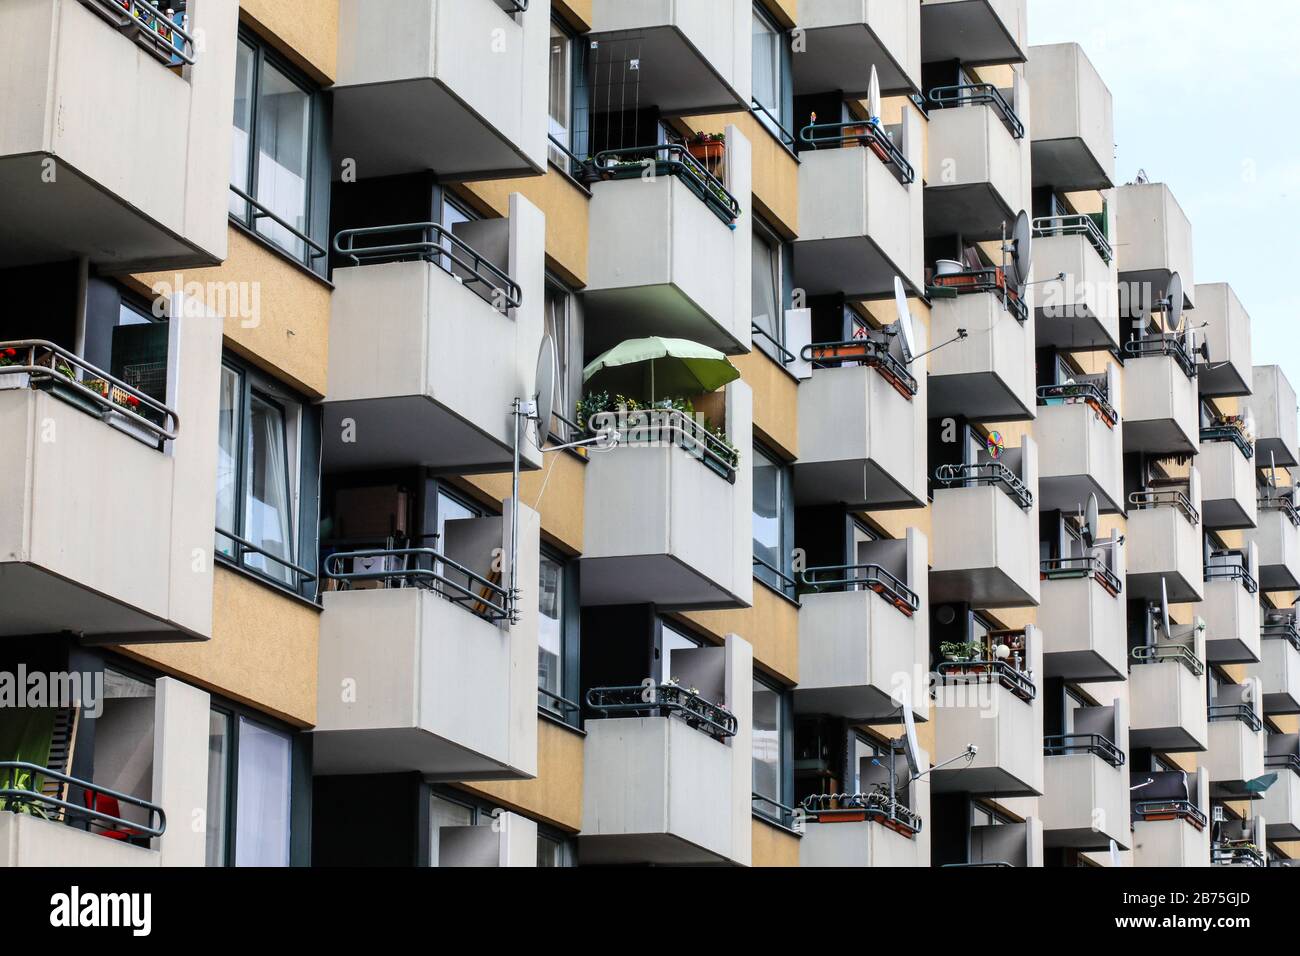 Blick auf ein Wohnhaus aus den 70er Jahren, auf einigen Balkonen sind Satellitenschüsseln für den TV-Empfang angebracht, am 03.05.2018 [automatisierte Übersetzung] Stockfoto